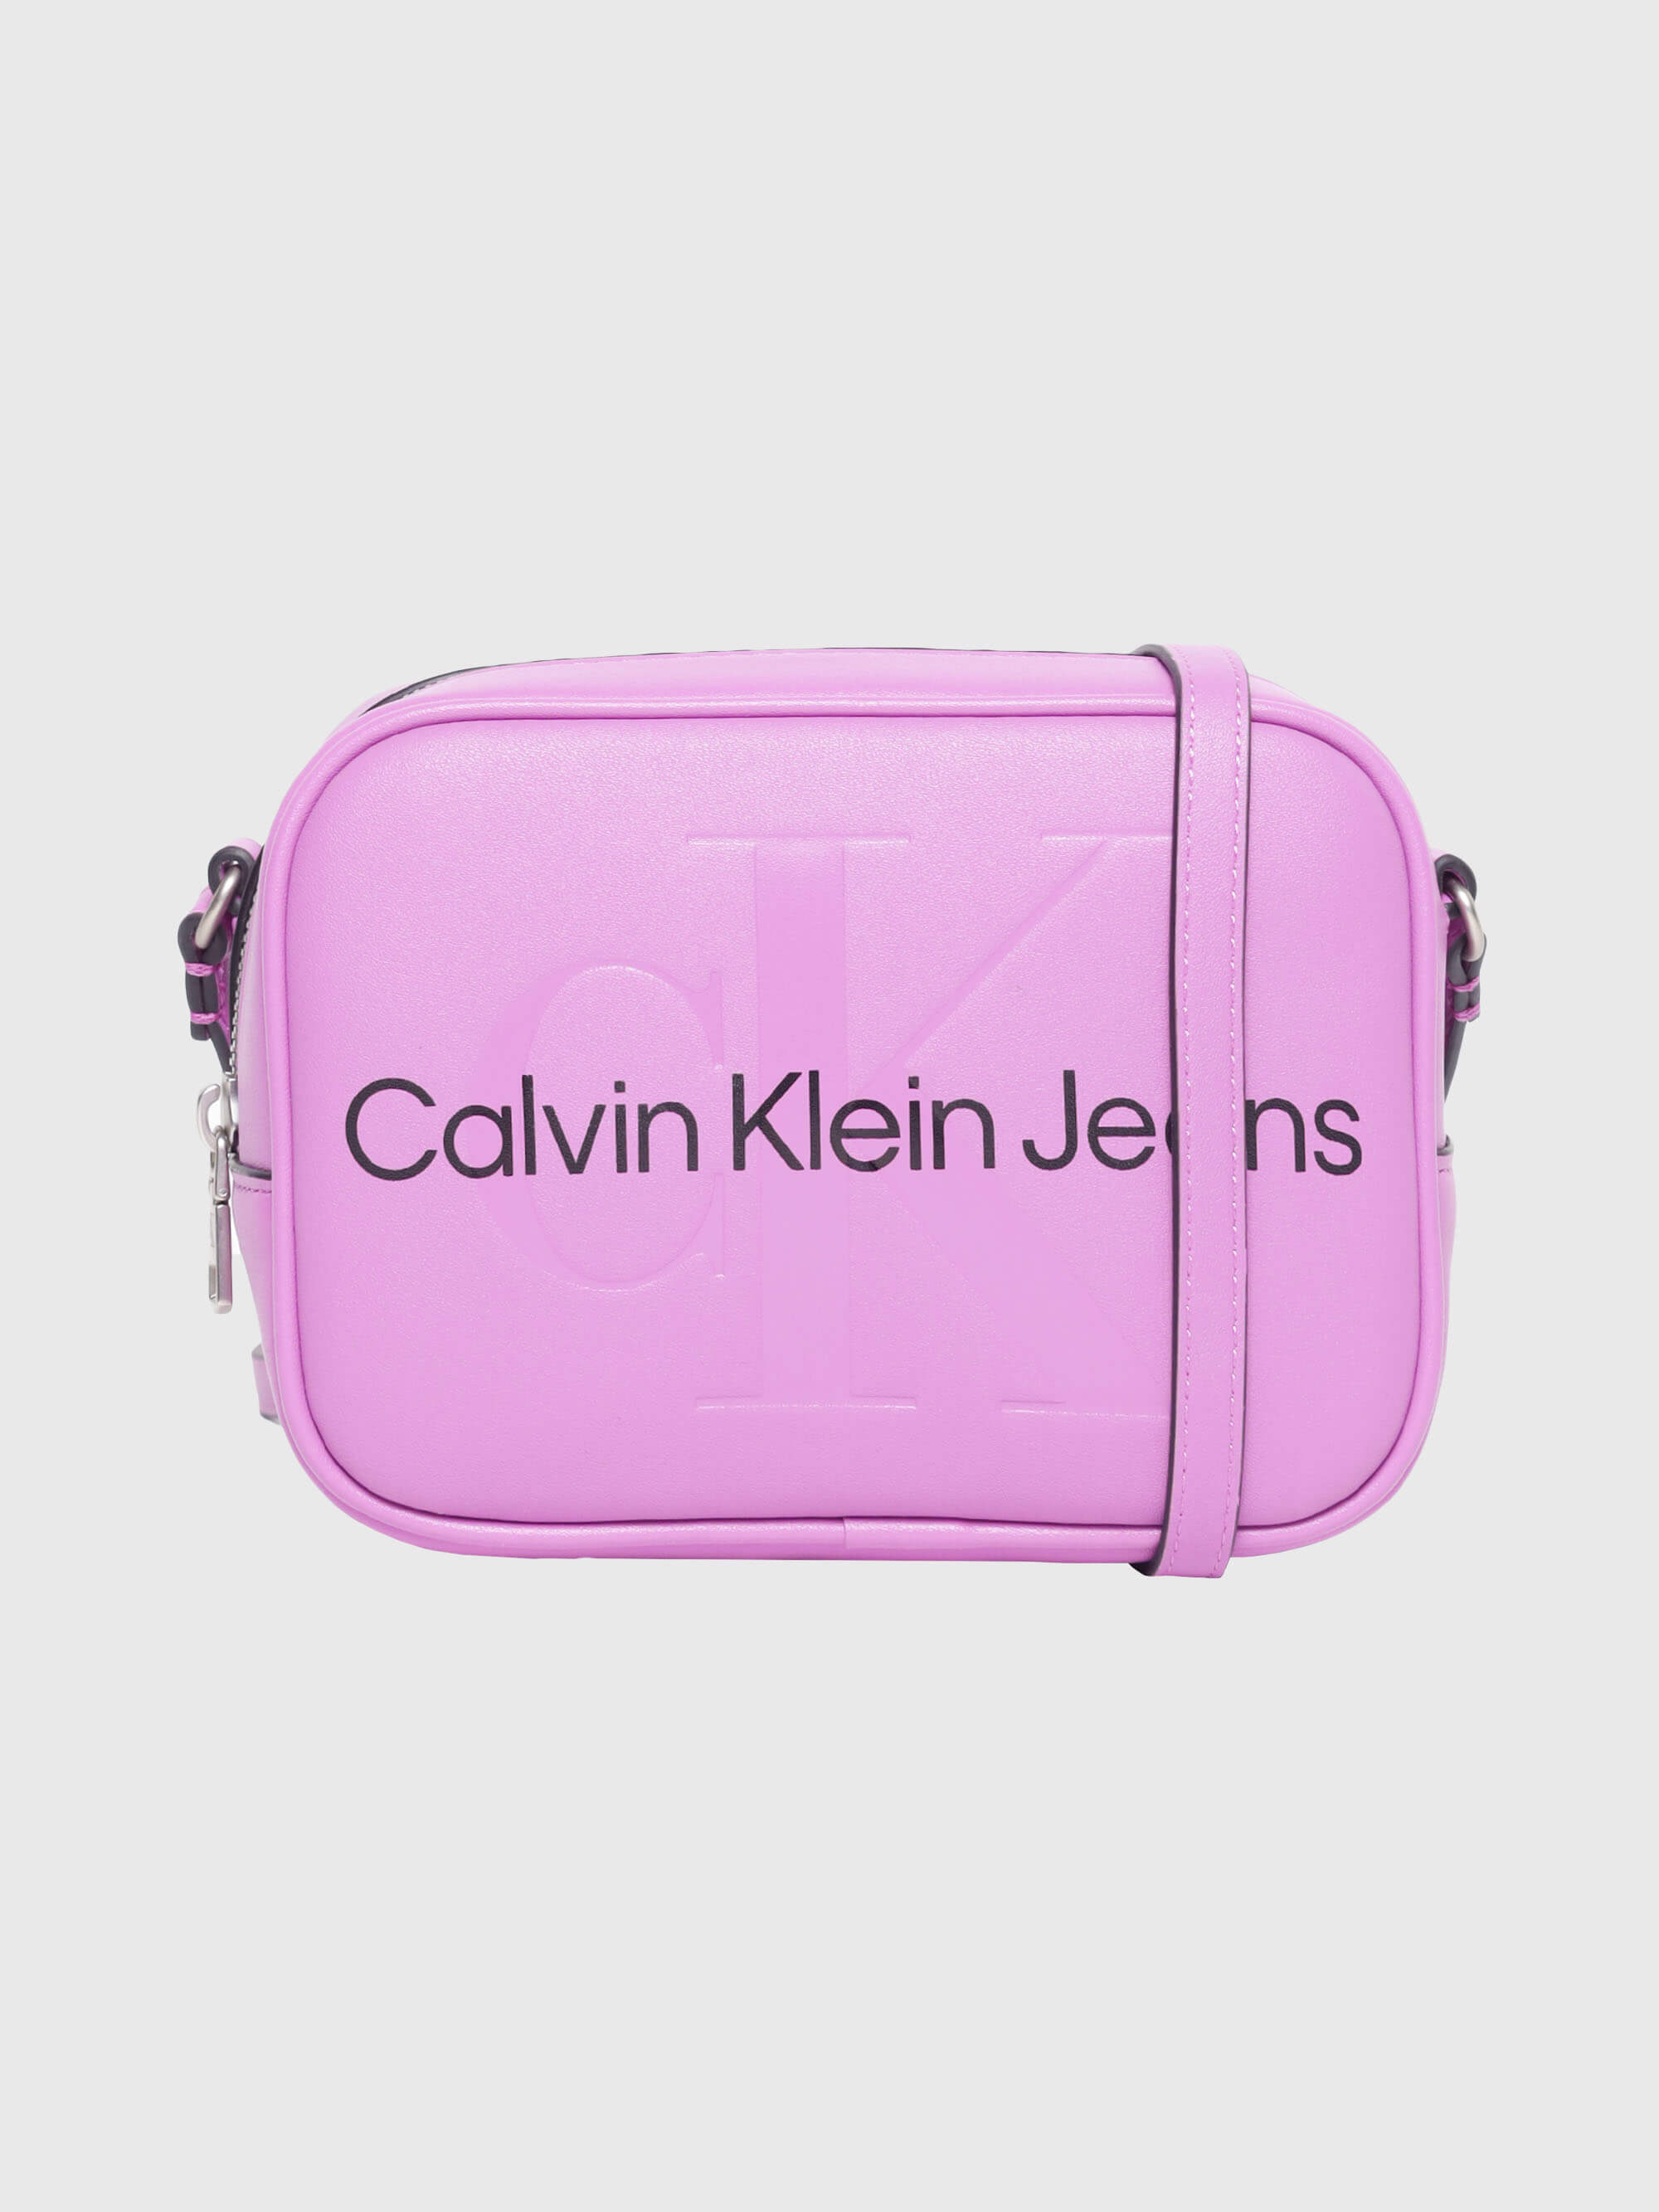 Bolsa Calvin Klein Crossbody Mujer Morado - Talla: Única